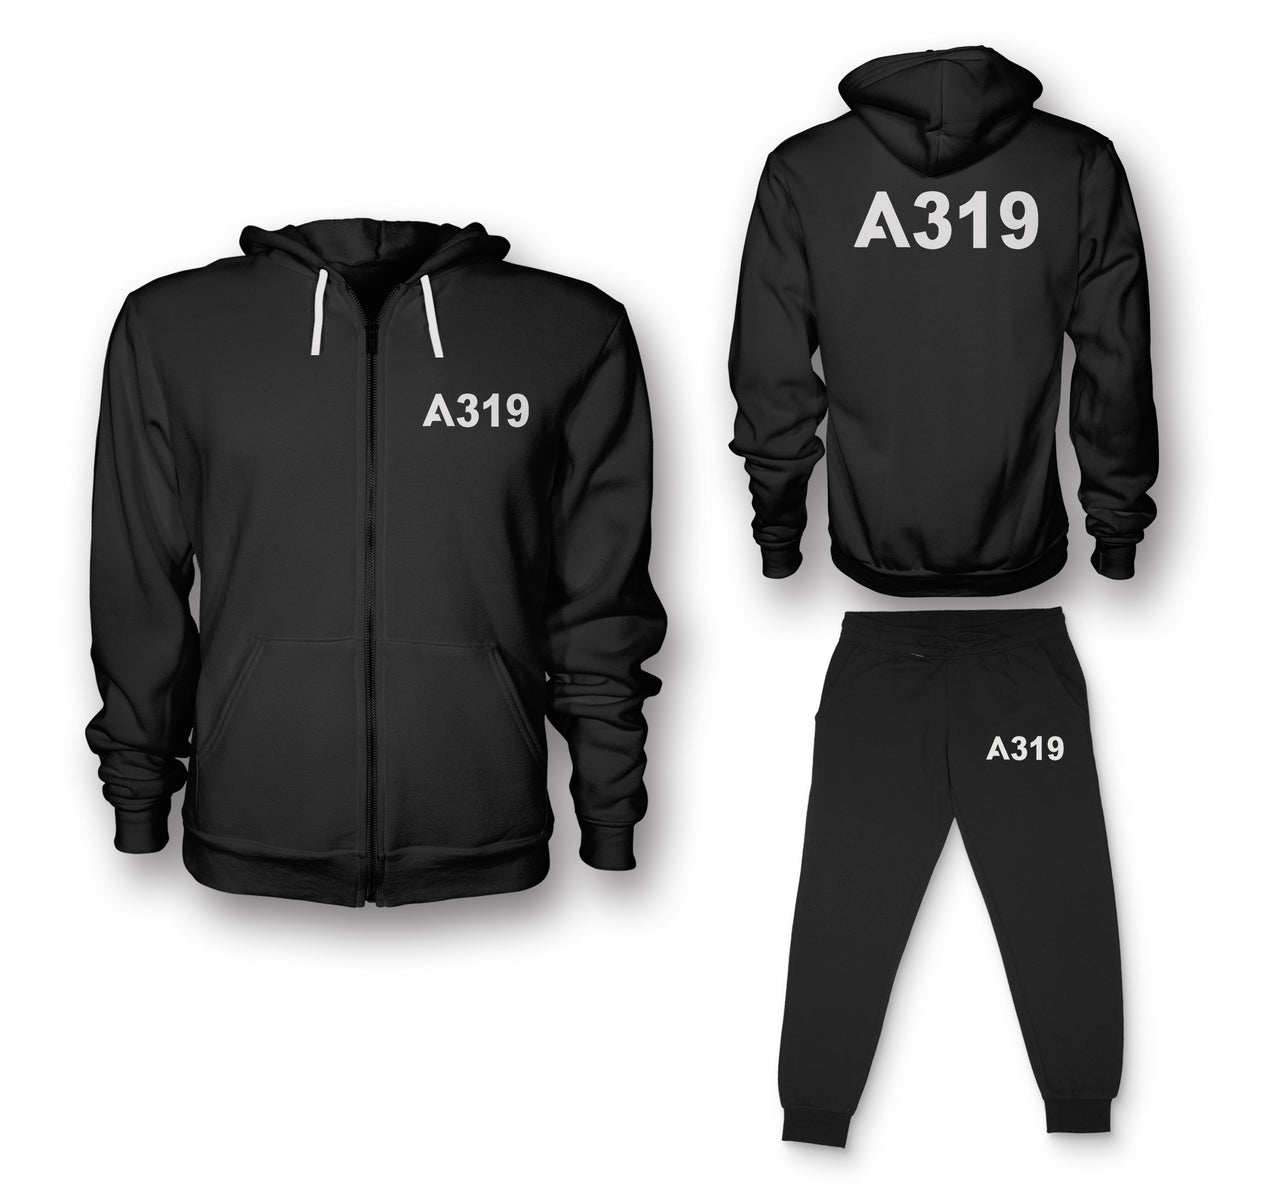 A319 Flat Text Designed Zipped Hoodies & Sweatpants Set